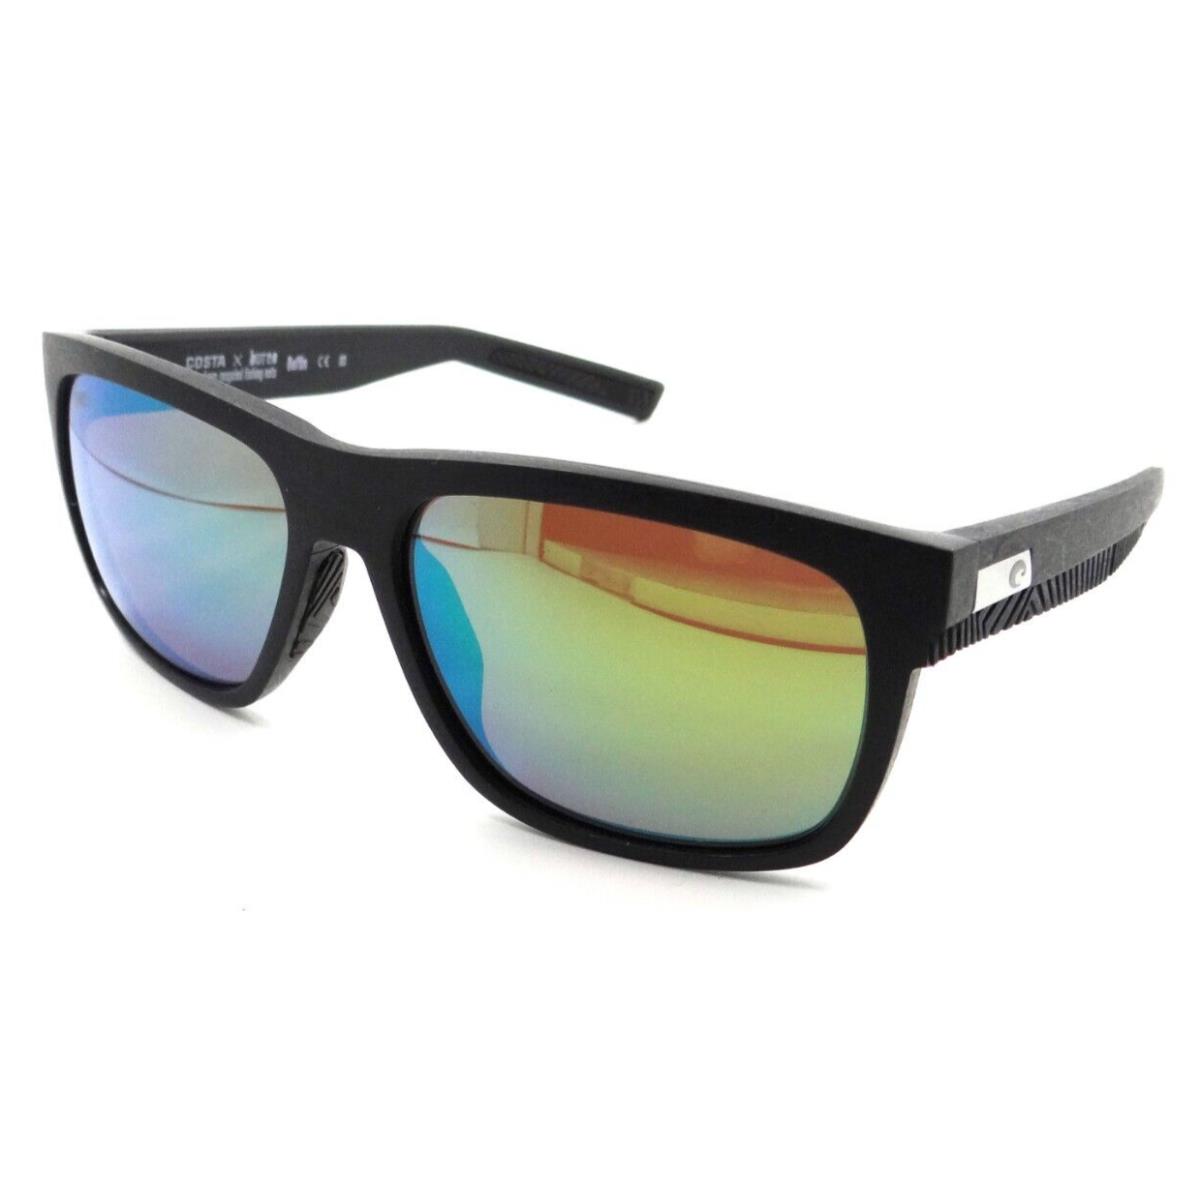 Costa Del Mar Sunglasses Baffin 58-16-140 Net Gray Gray Rubber/green Mirror 580G